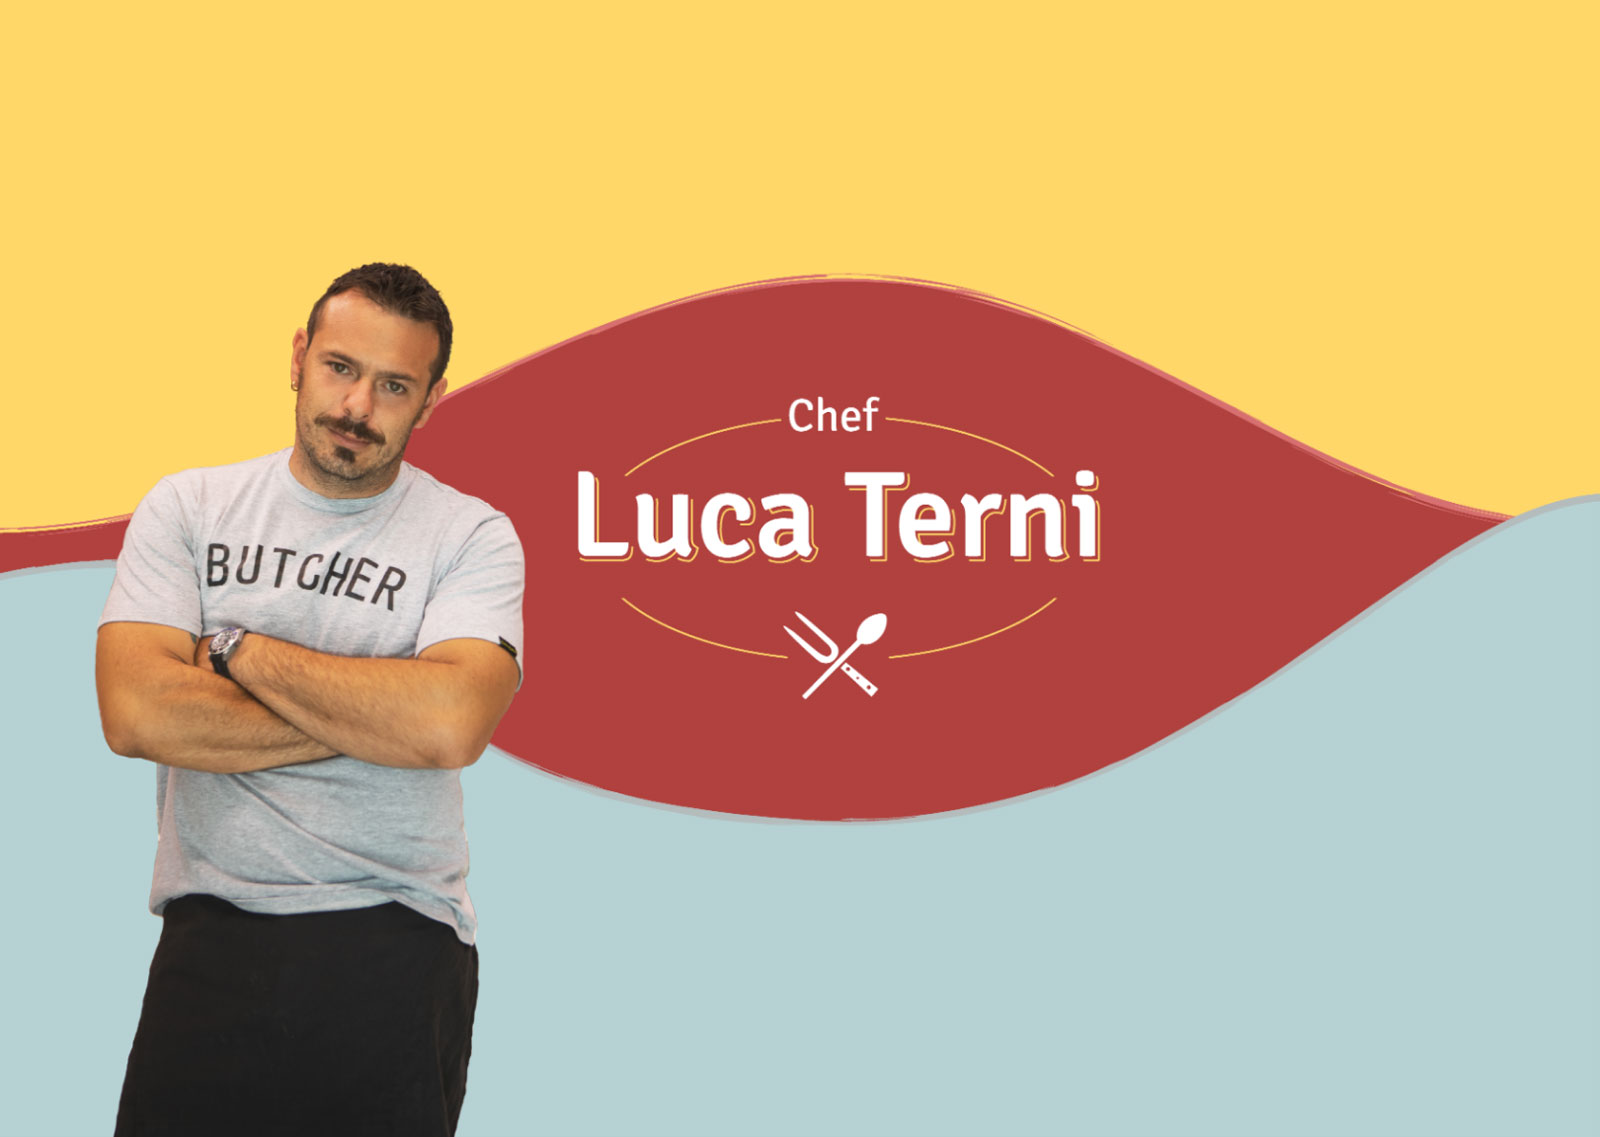 copertina canale Youtube Luca Terni